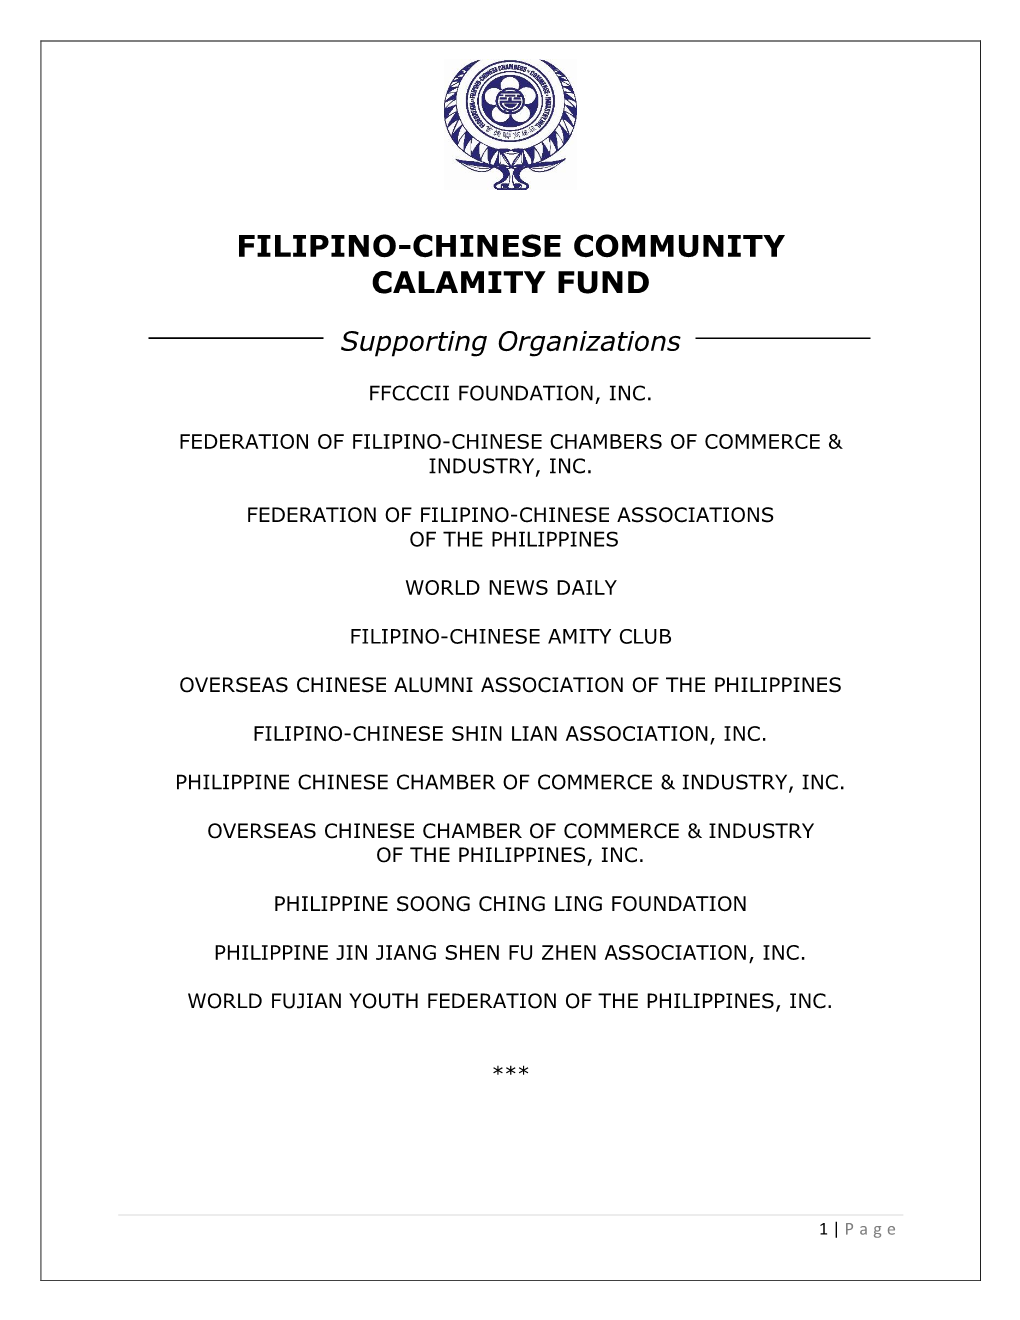 Filipino-Chinese Community Calamity Fund